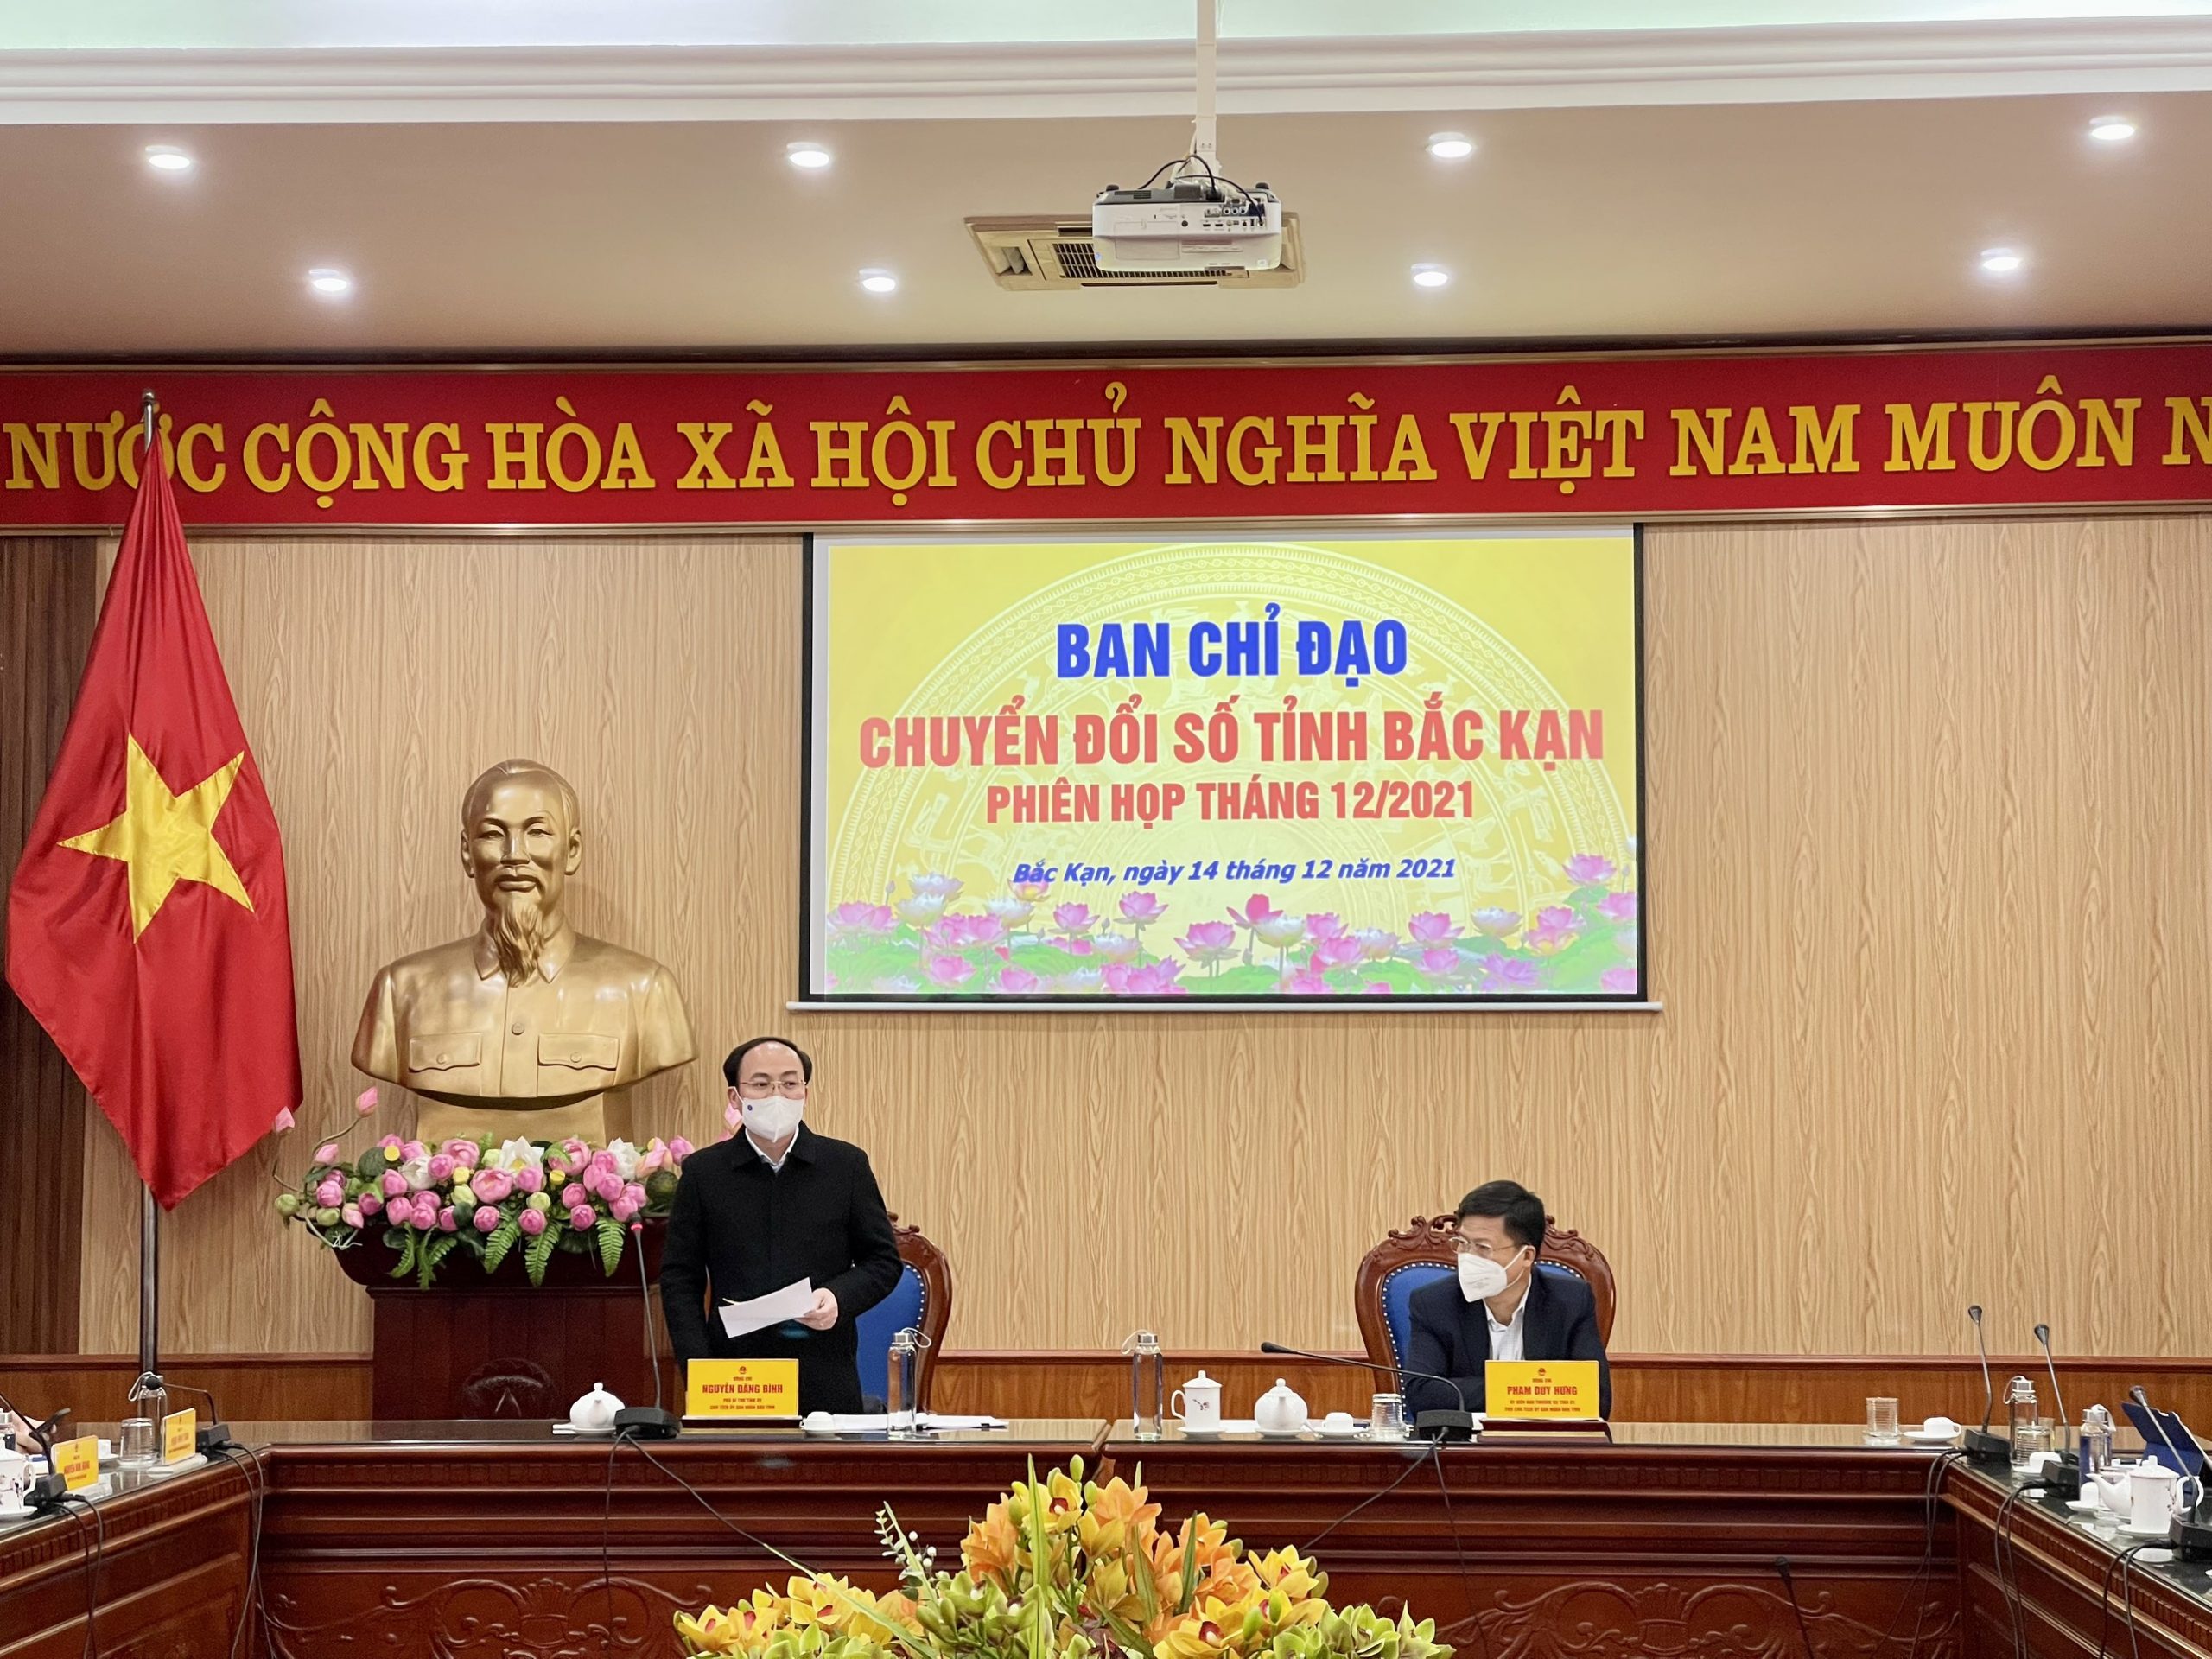 Đồng chí Nguyễn Đăng Bình, Chủ tịch UBND tỉnh, Trưởng Ban Chỉ đạo về Chuyển đổi số phát biểu tại sự kiện